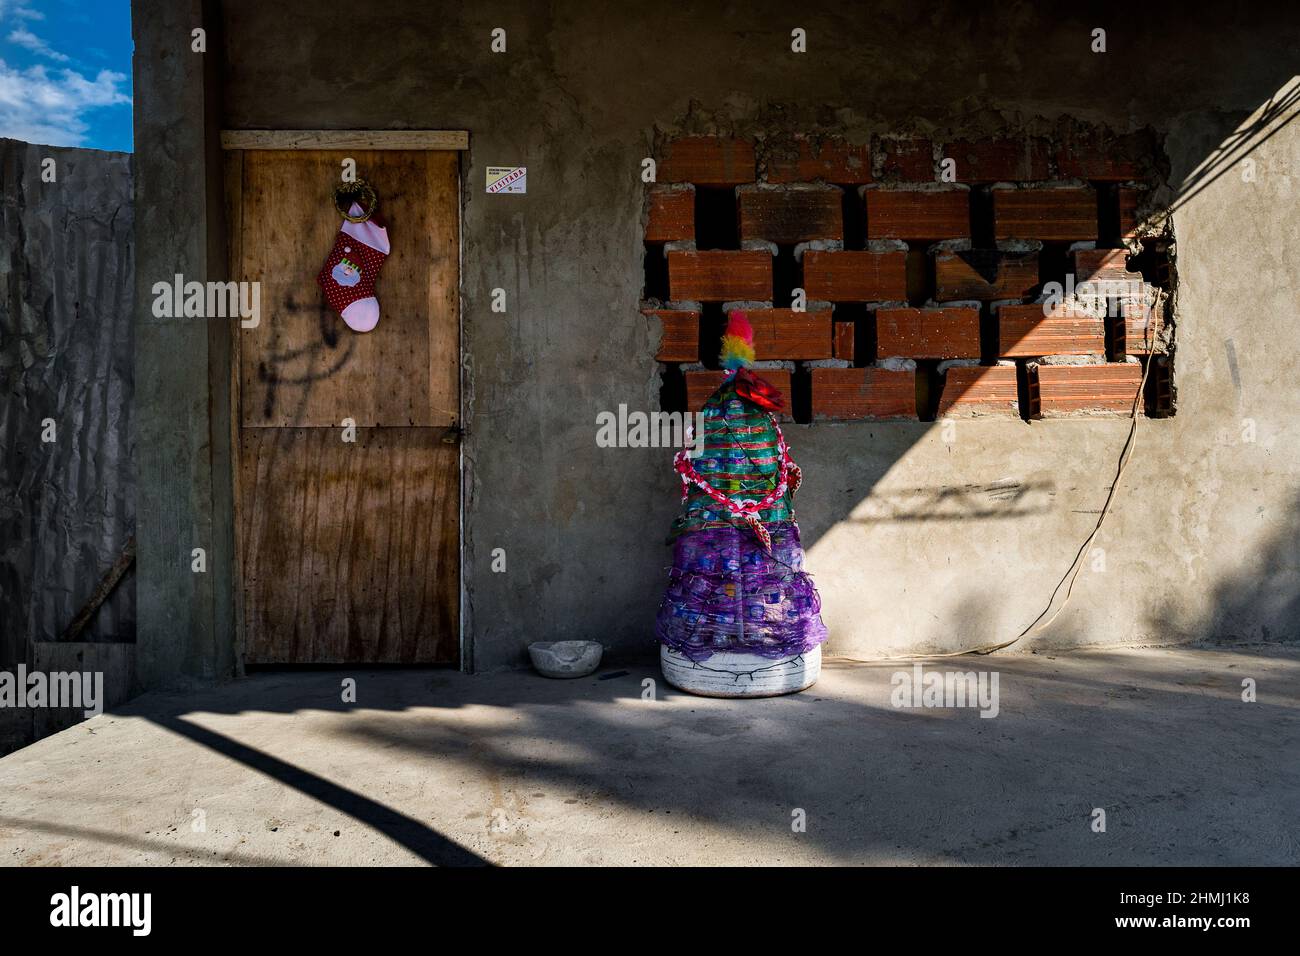 Un árbol de Navidad, hecho de materiales reciclados, se ve colocado frente a una casa familiar en Olaya Herrera, un barrio de baja clase social en Cartagena. Foto de stock